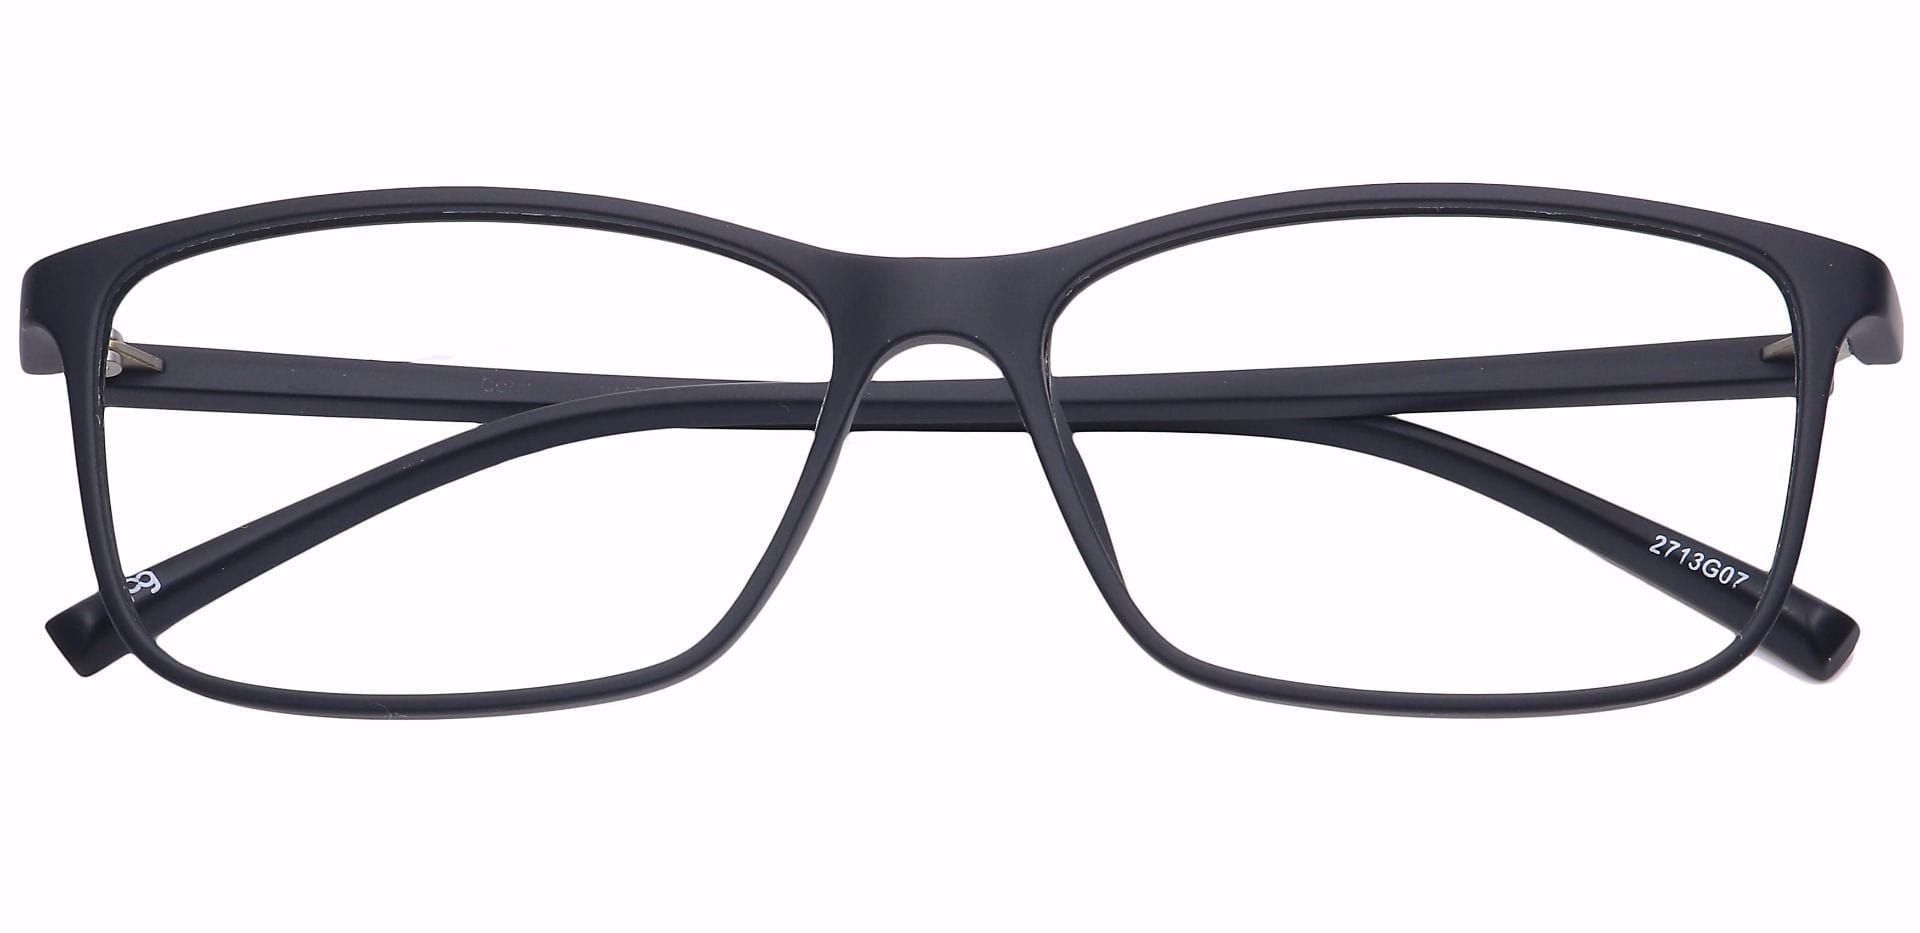 Pure Rectangle Non-Rx Glasses - Black